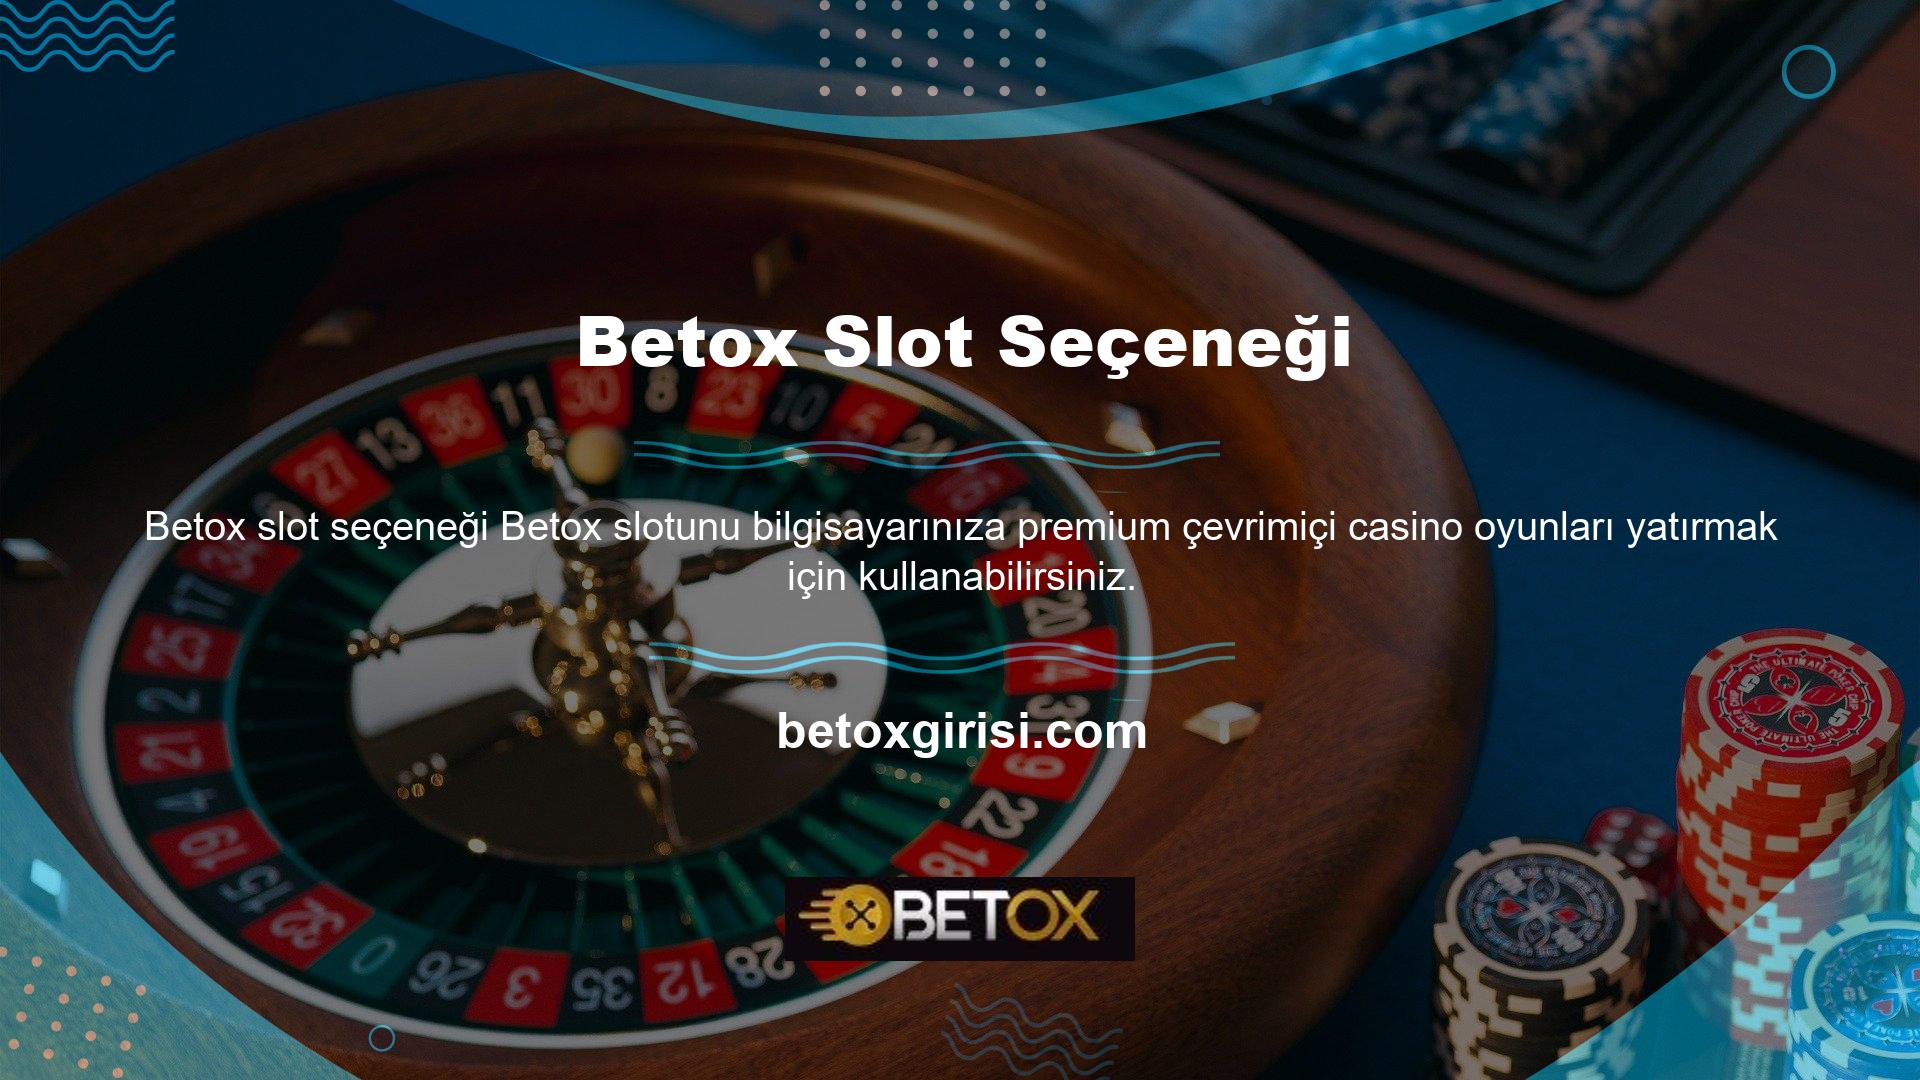 Türkiye'de popüler casino platformu, en çok oynamanın basit bir yolunu sunuyor ücretsiz popüler slot makineleri